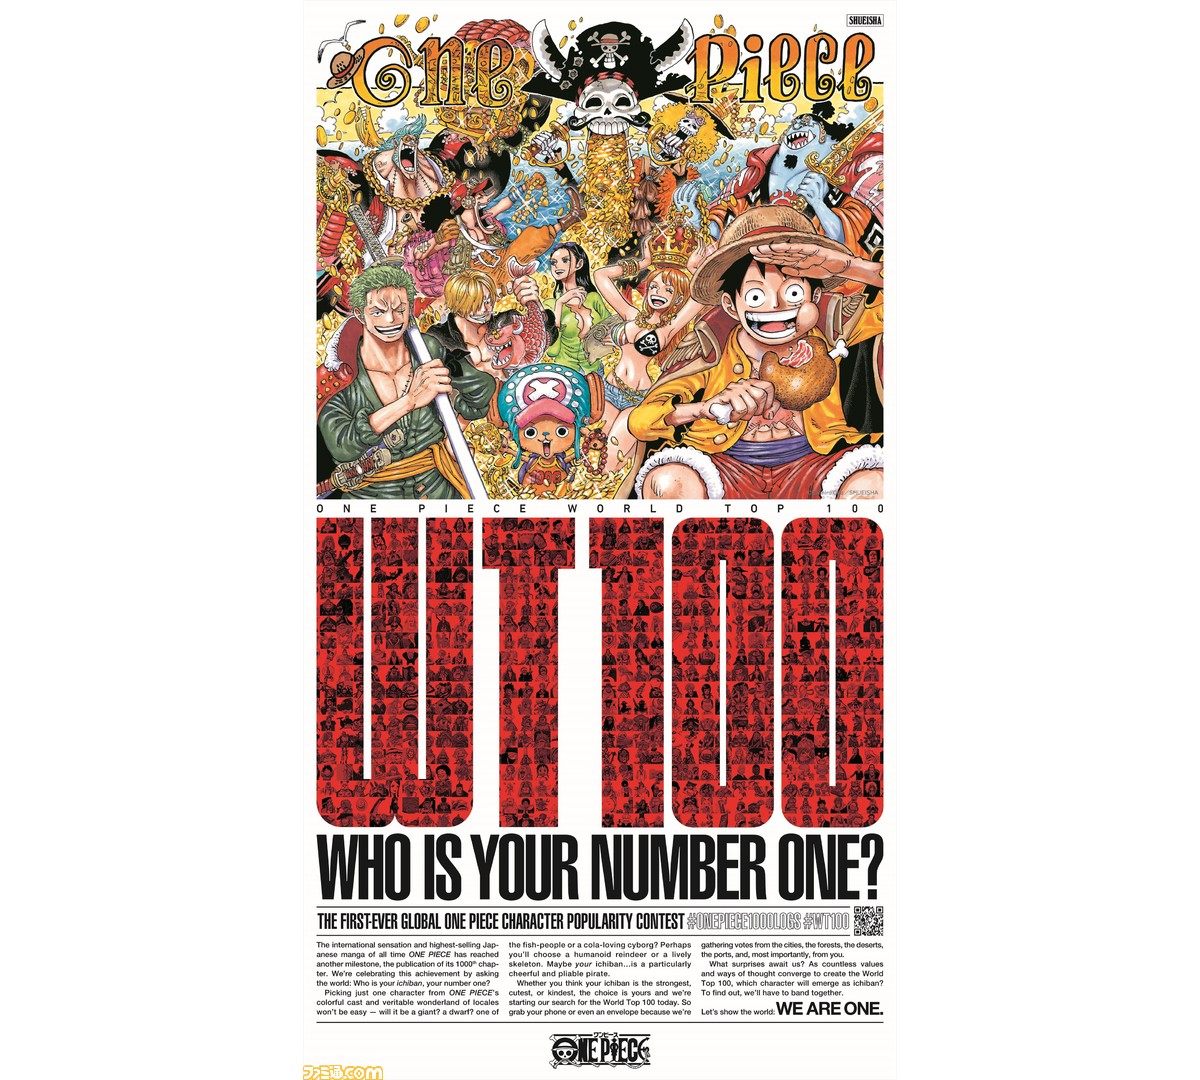 ワンピース 連載1000話到達記念キャンペーンが開催 One Pieceキャラクター世界人気投票 などさまざまな企画がスタート ファミ通 Com